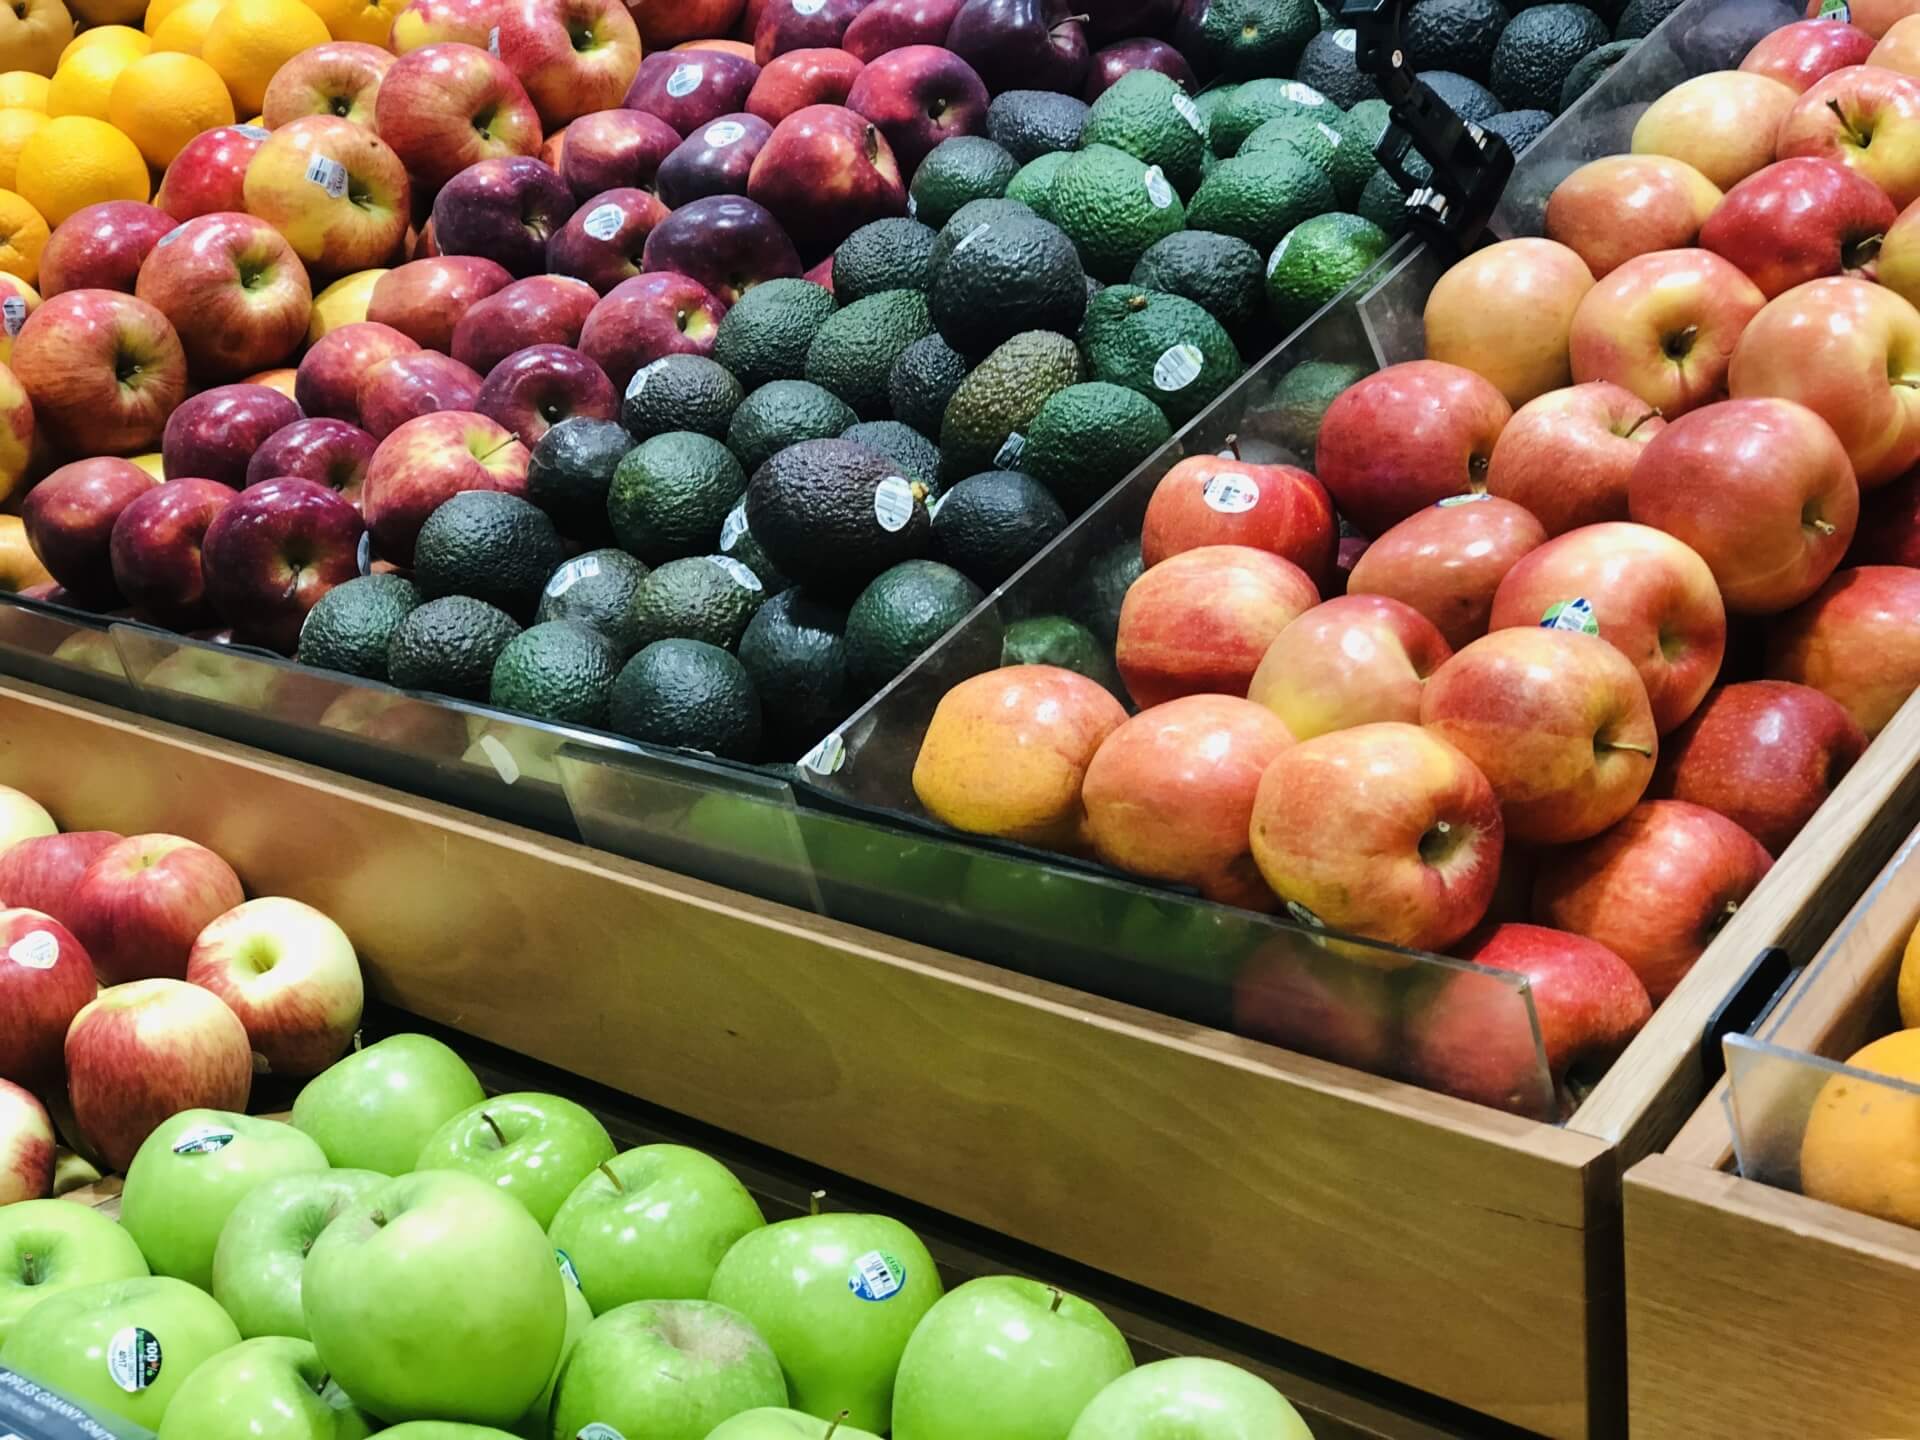 様々な種類のりんごやみかん、ゴーヤなどが陳列されたスーパーの売り場の写真